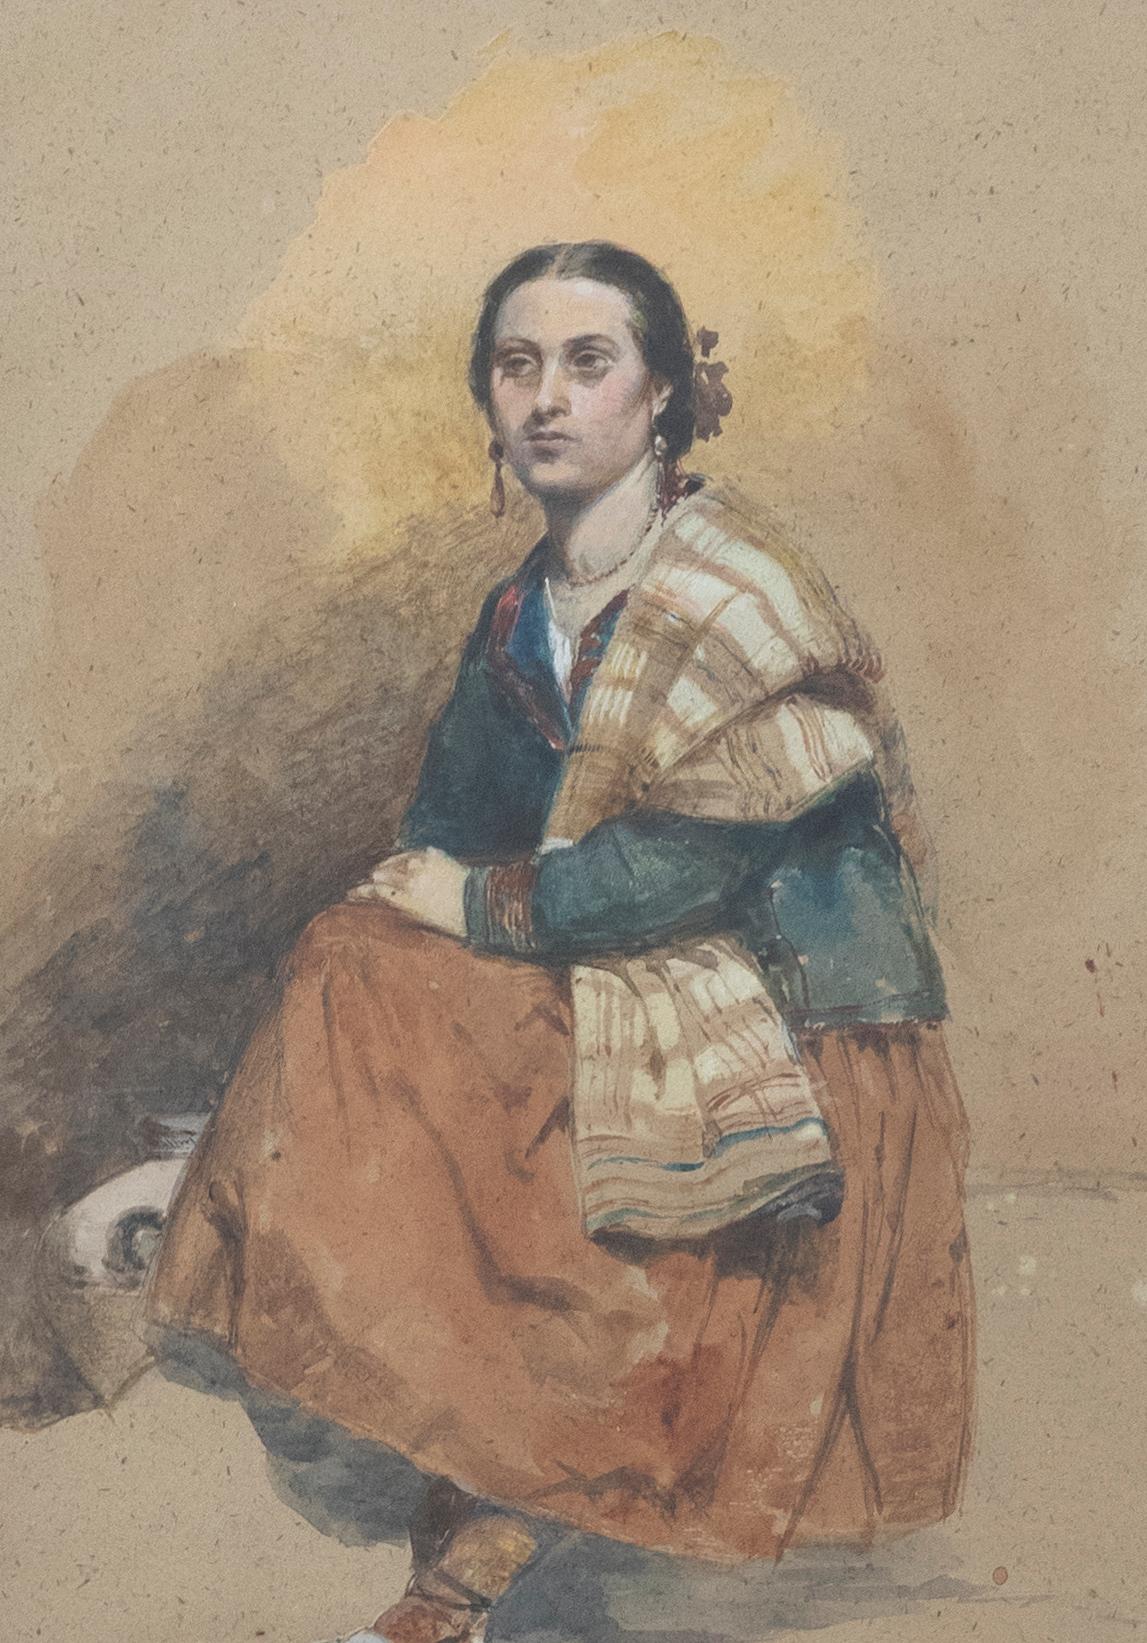 Ein charmantes Porträt in der Art von John Frederick Lewis, das eine spanische Dame auf einem Hocker sitzend zeigt. Der Künstler fängt die Frau in traditioneller Kleidung ein, die aus mehreren Schichten besteht, darunter ein langer orangefarbener